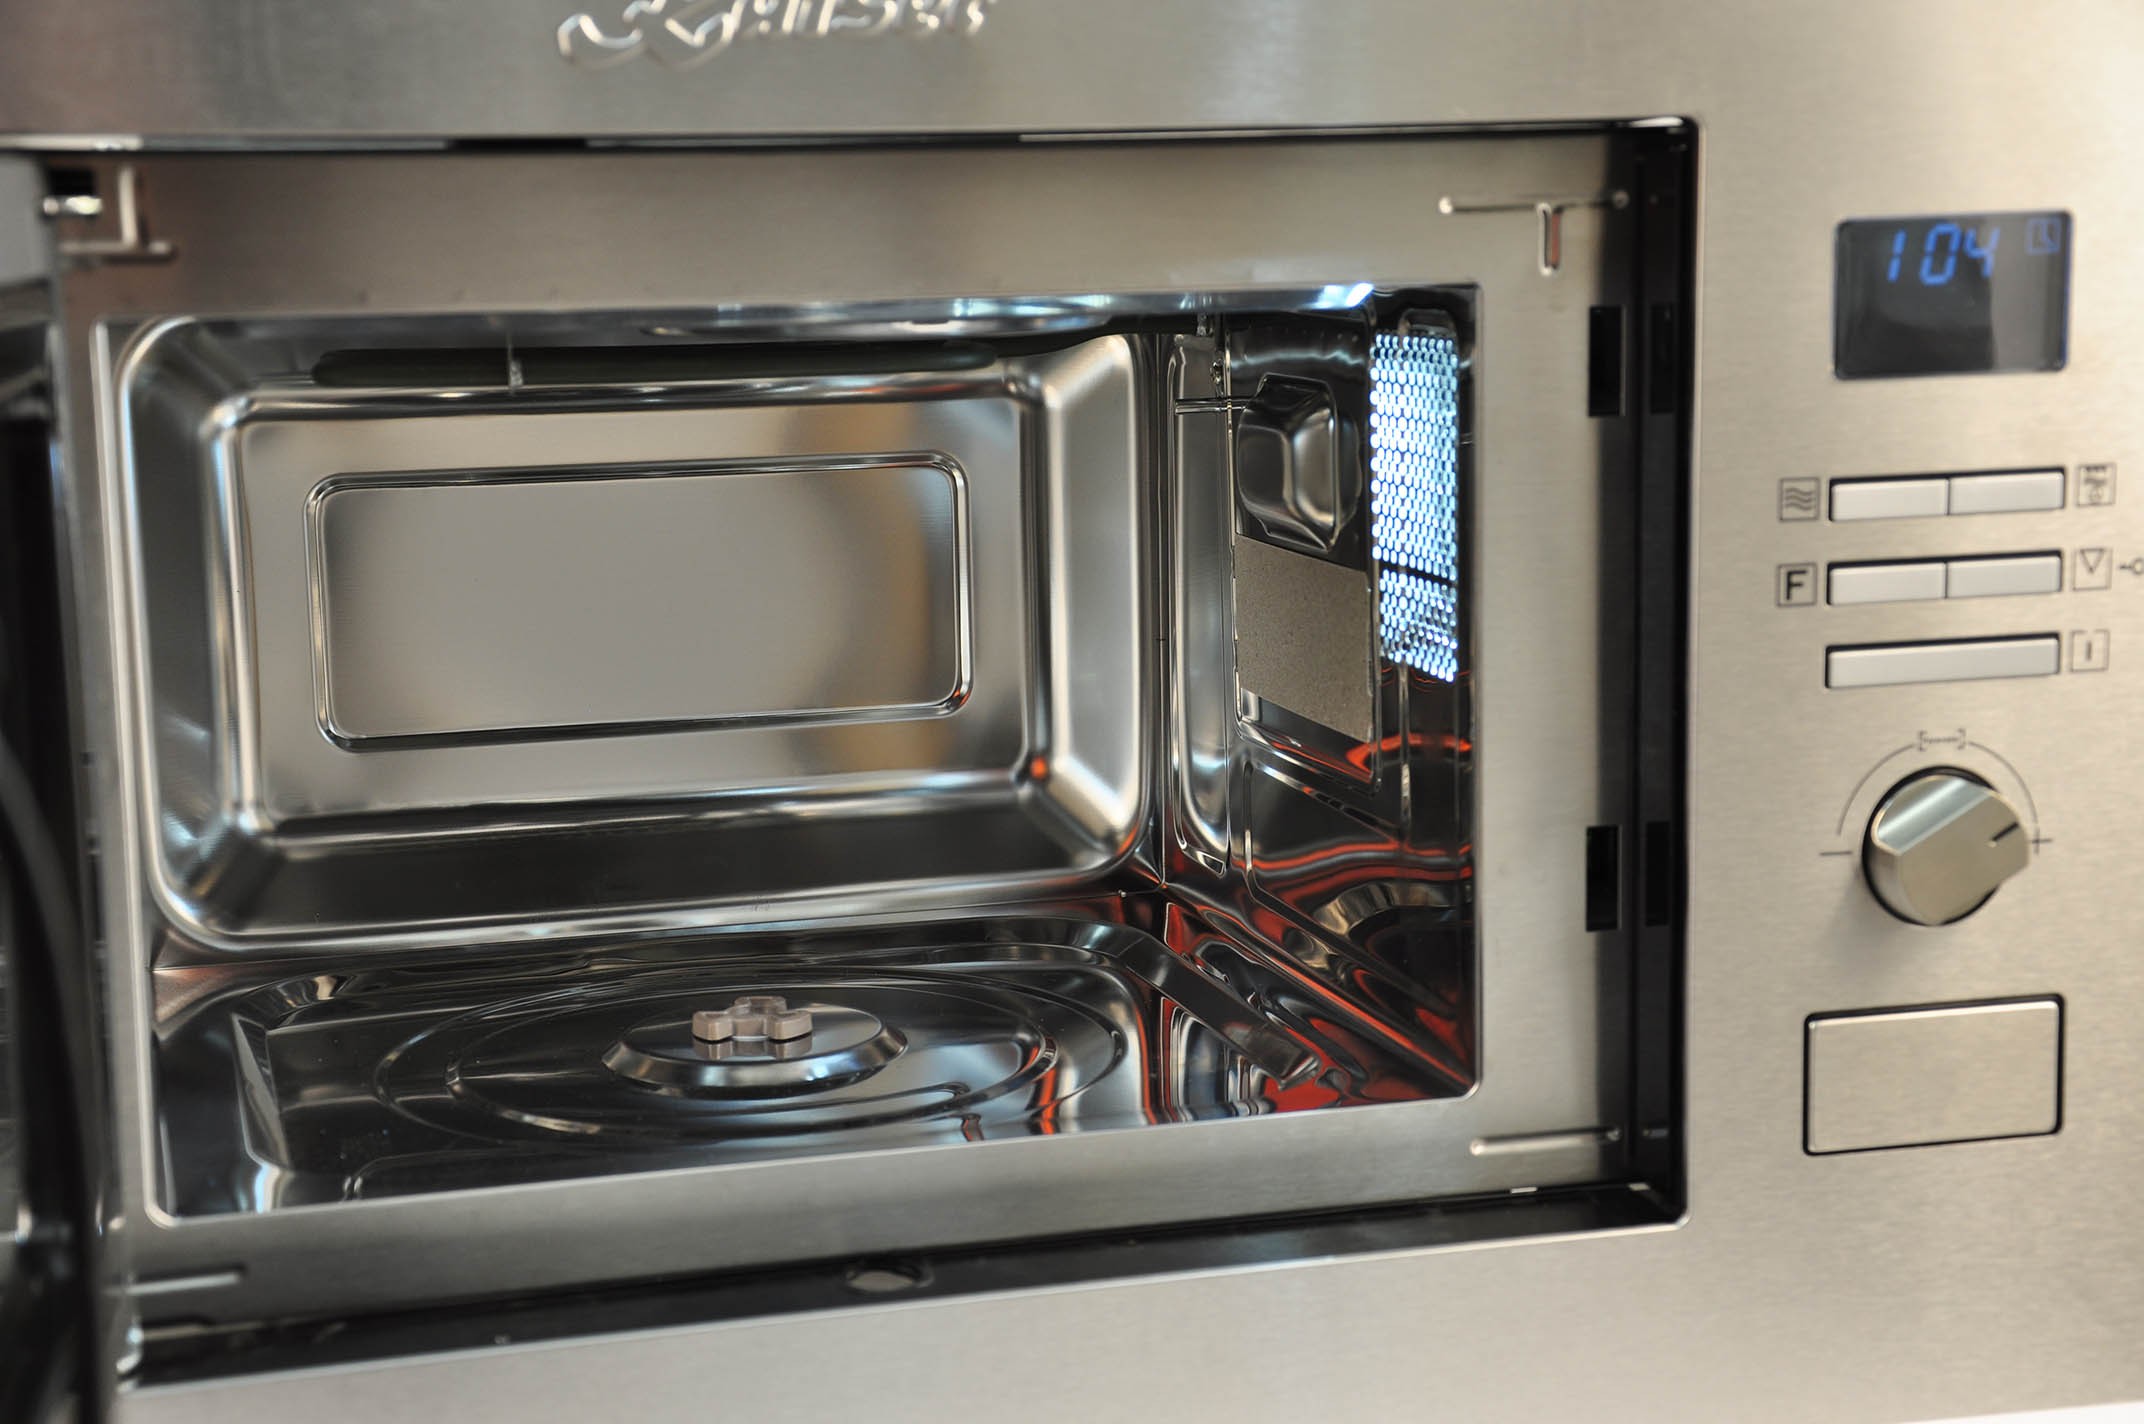 Микроволновая печь Kaiser EM 2520 внешний вид - фото 9